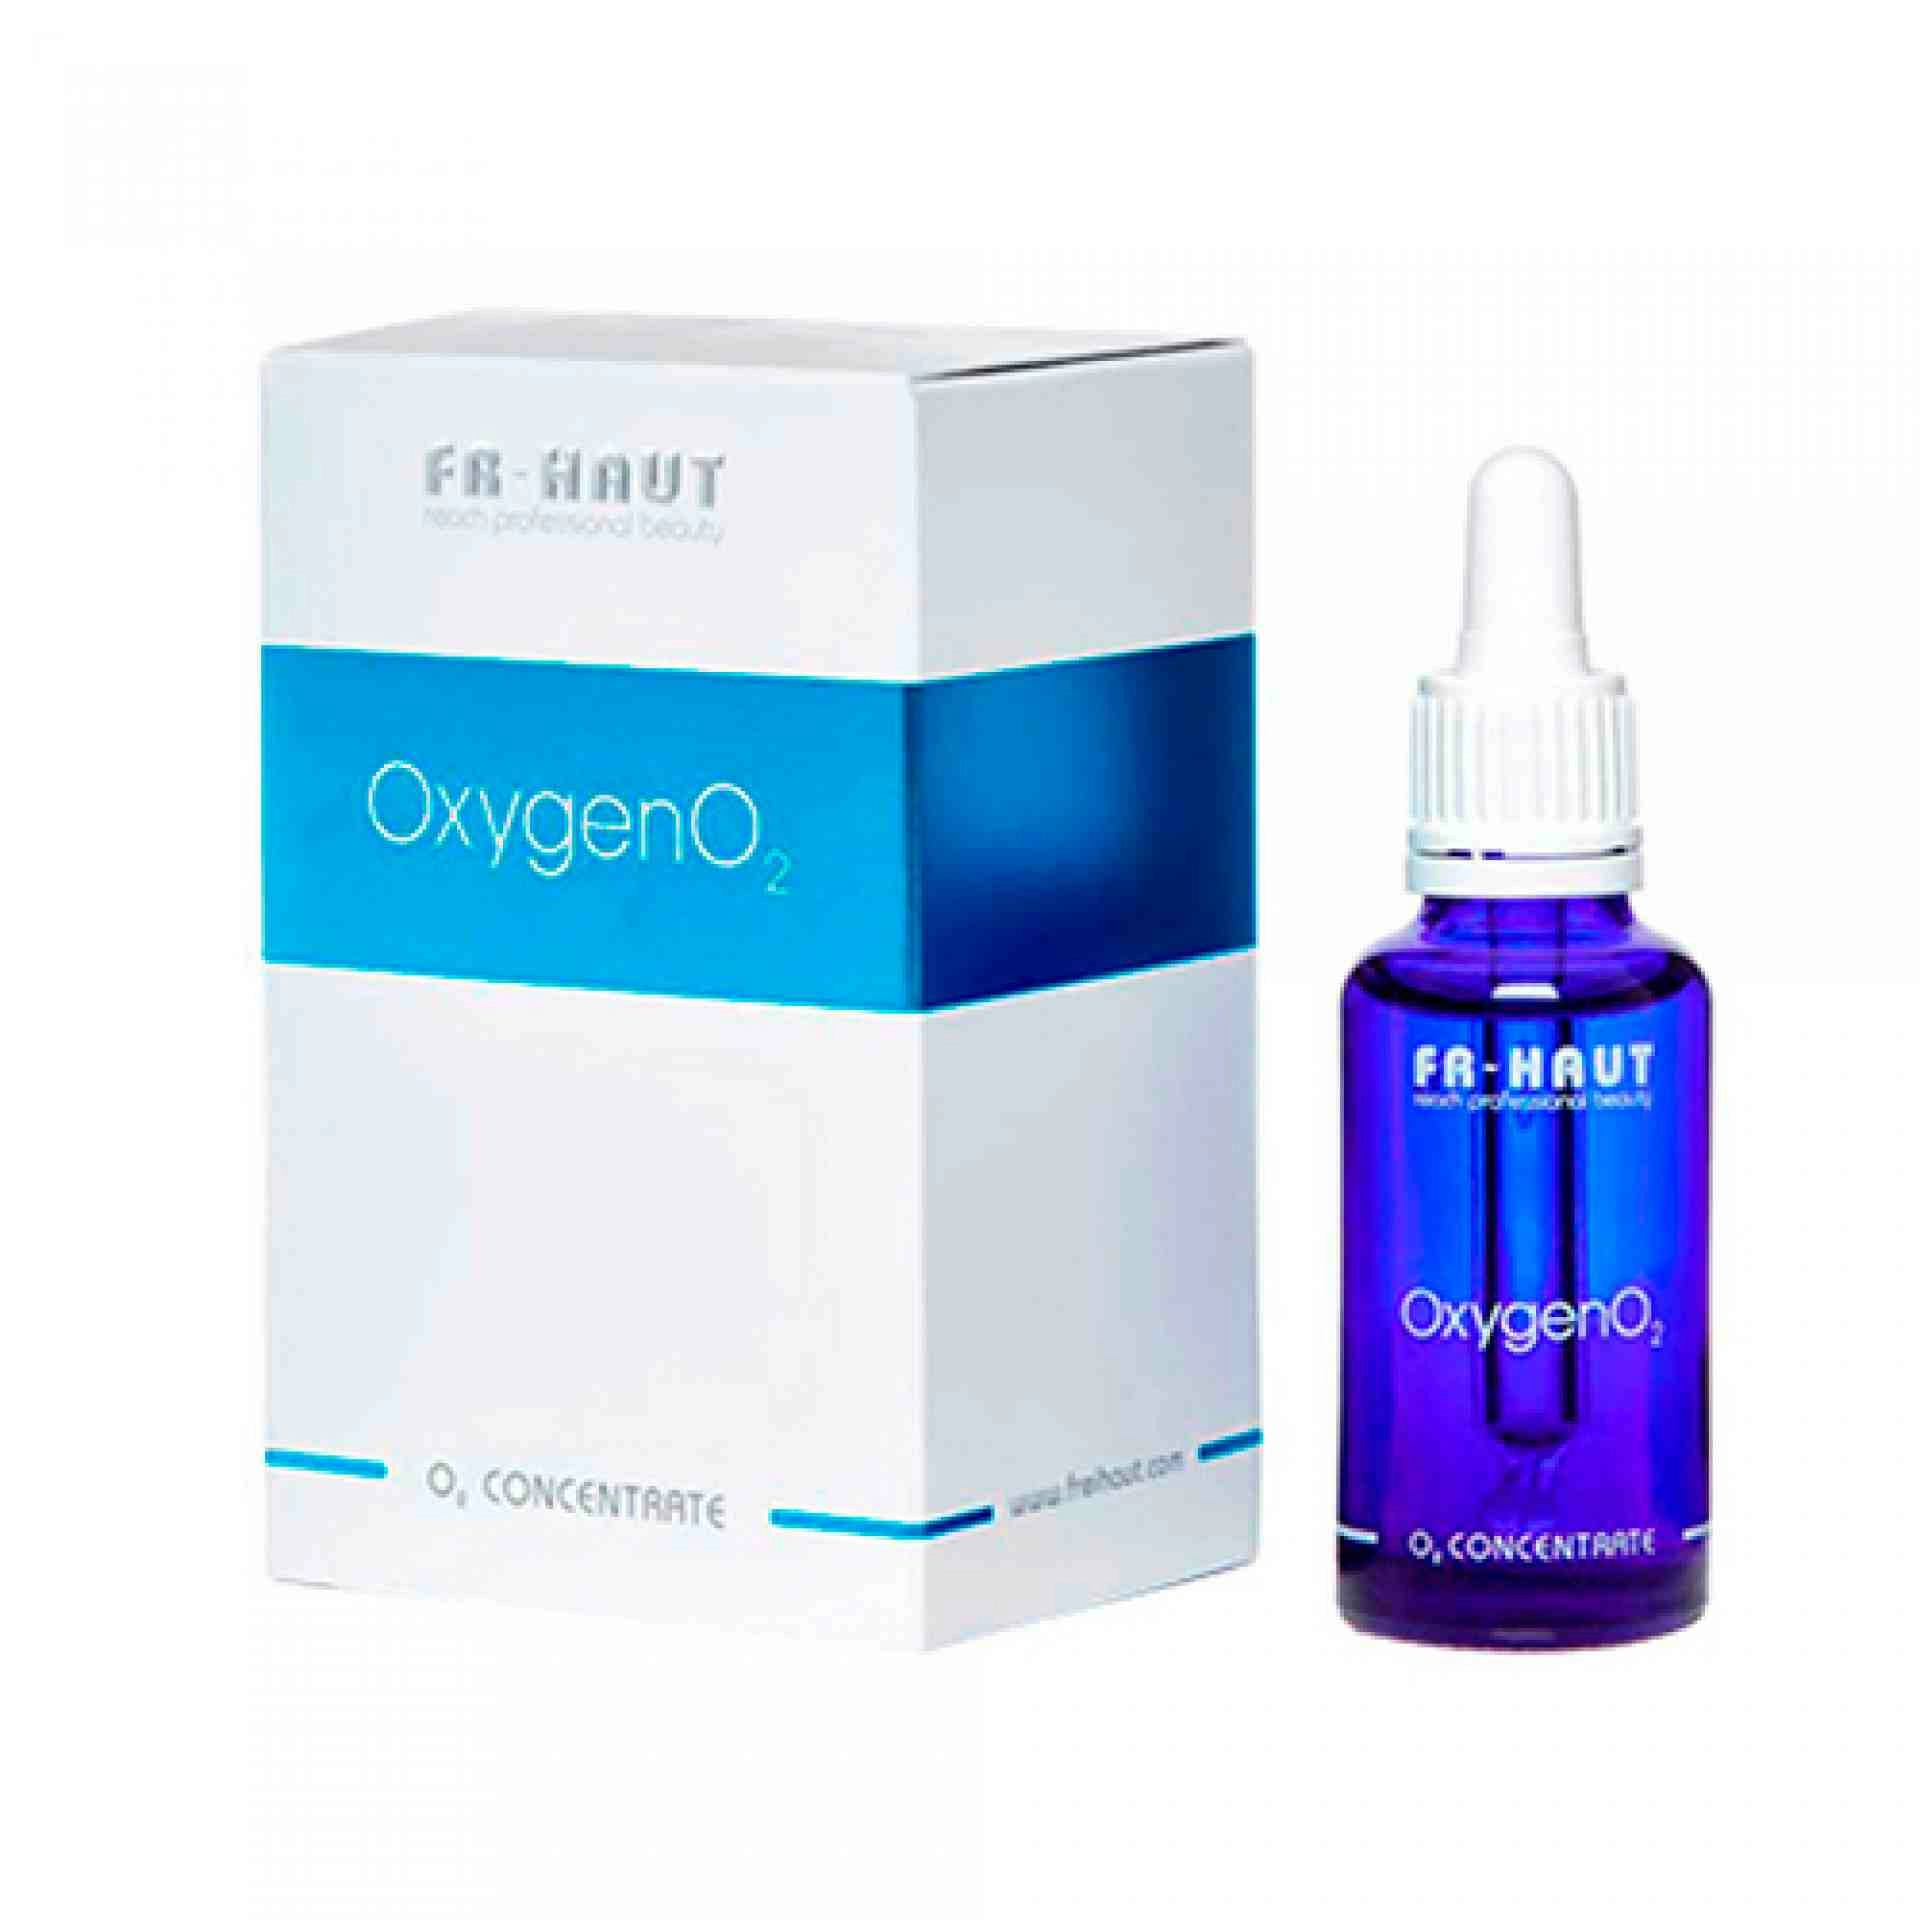 Oxygen 02 Concentrate | Concentrado Piel Sensible 30ml - O2- Freihaut ®